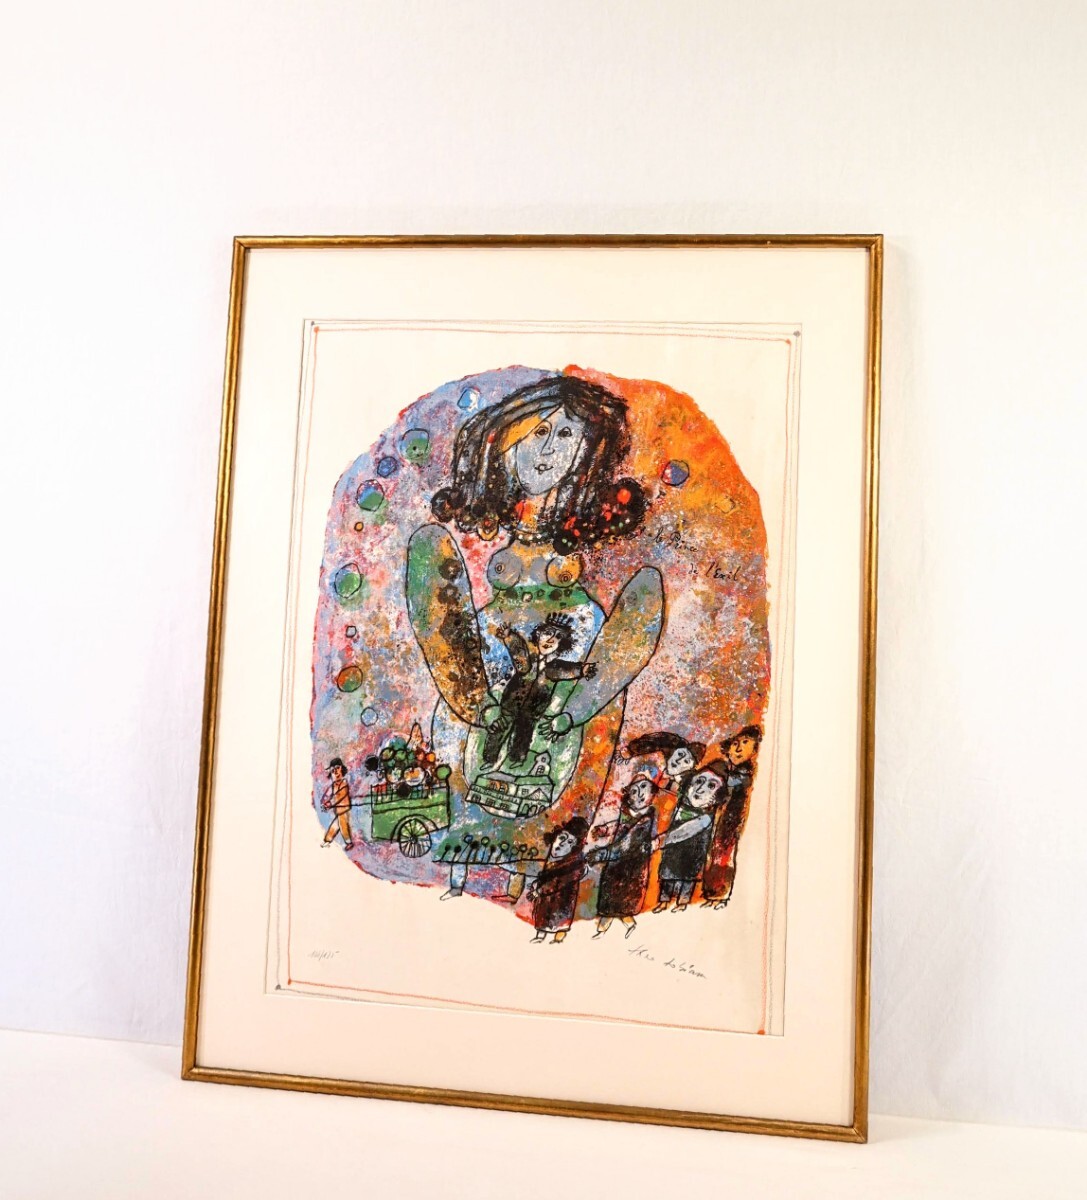 真作 テオ・トビアス リトグラフ「亡国の王子」画寸 57cm×76cm イスラエル人作家 クレヨンを濃く塗りつけた様な独特の強烈な色彩 9006_画像10